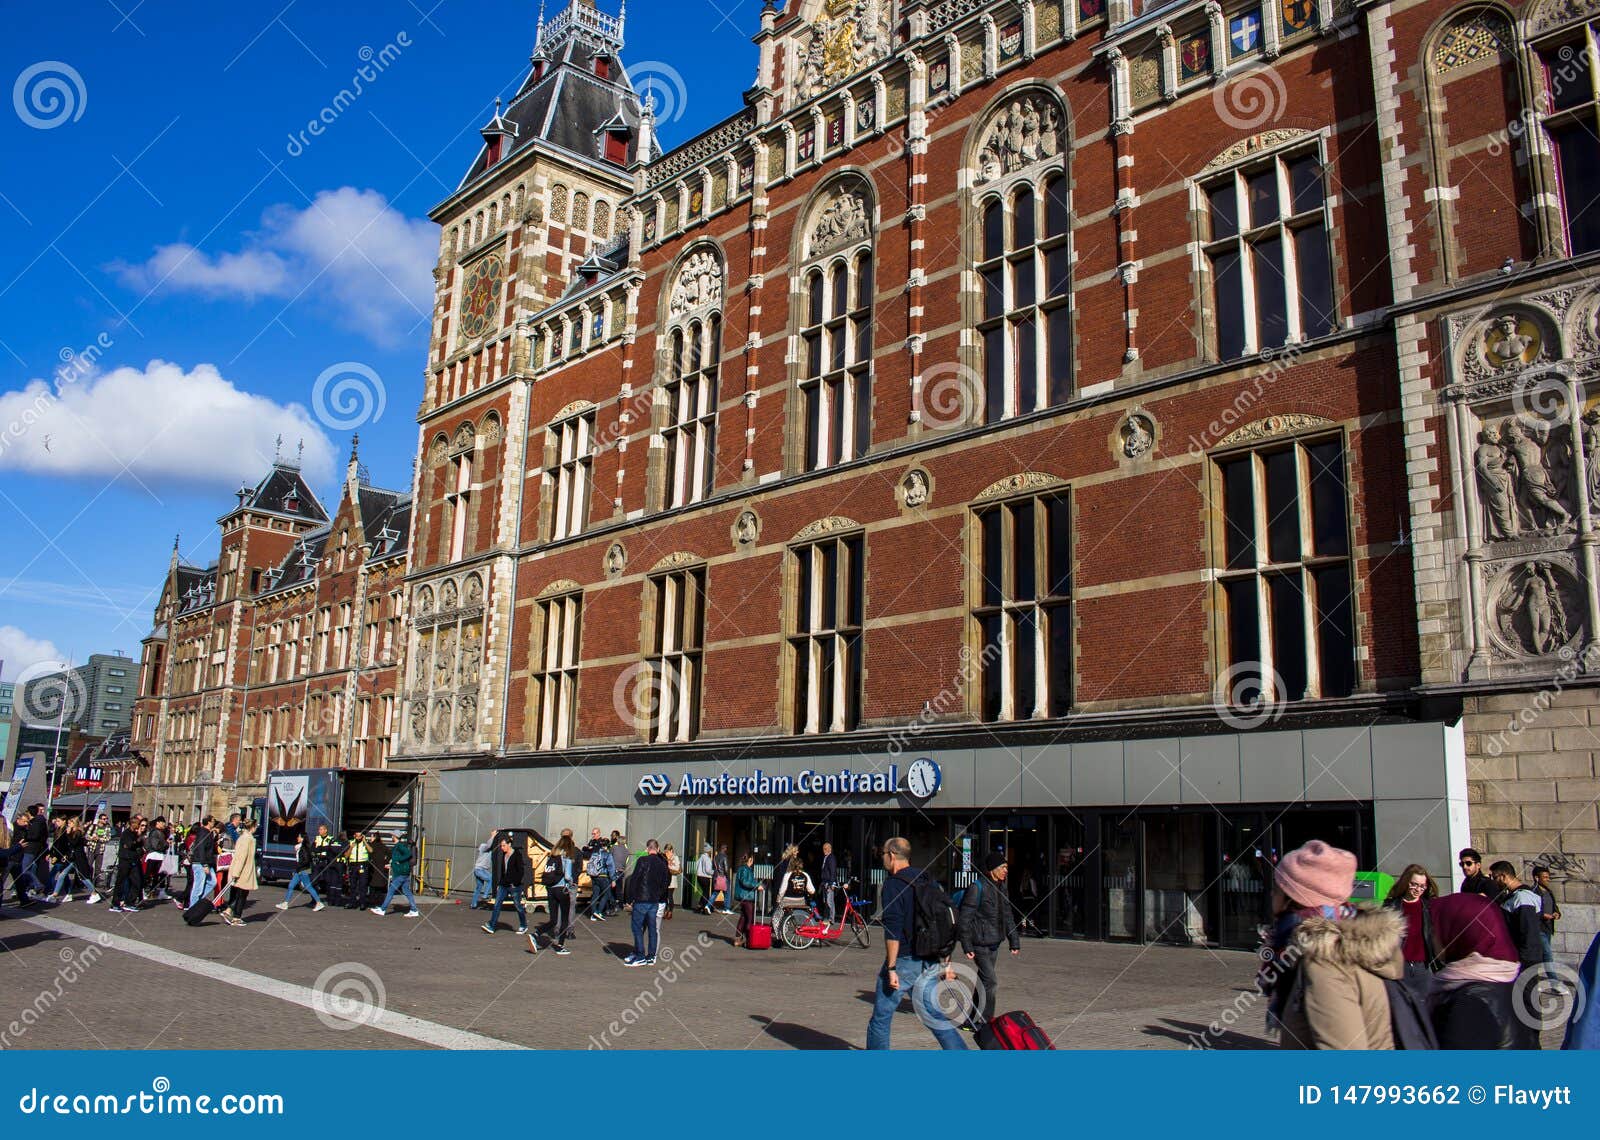 De Centrale Post Van Amsterdam Redactionele Fotografie - Image of ...